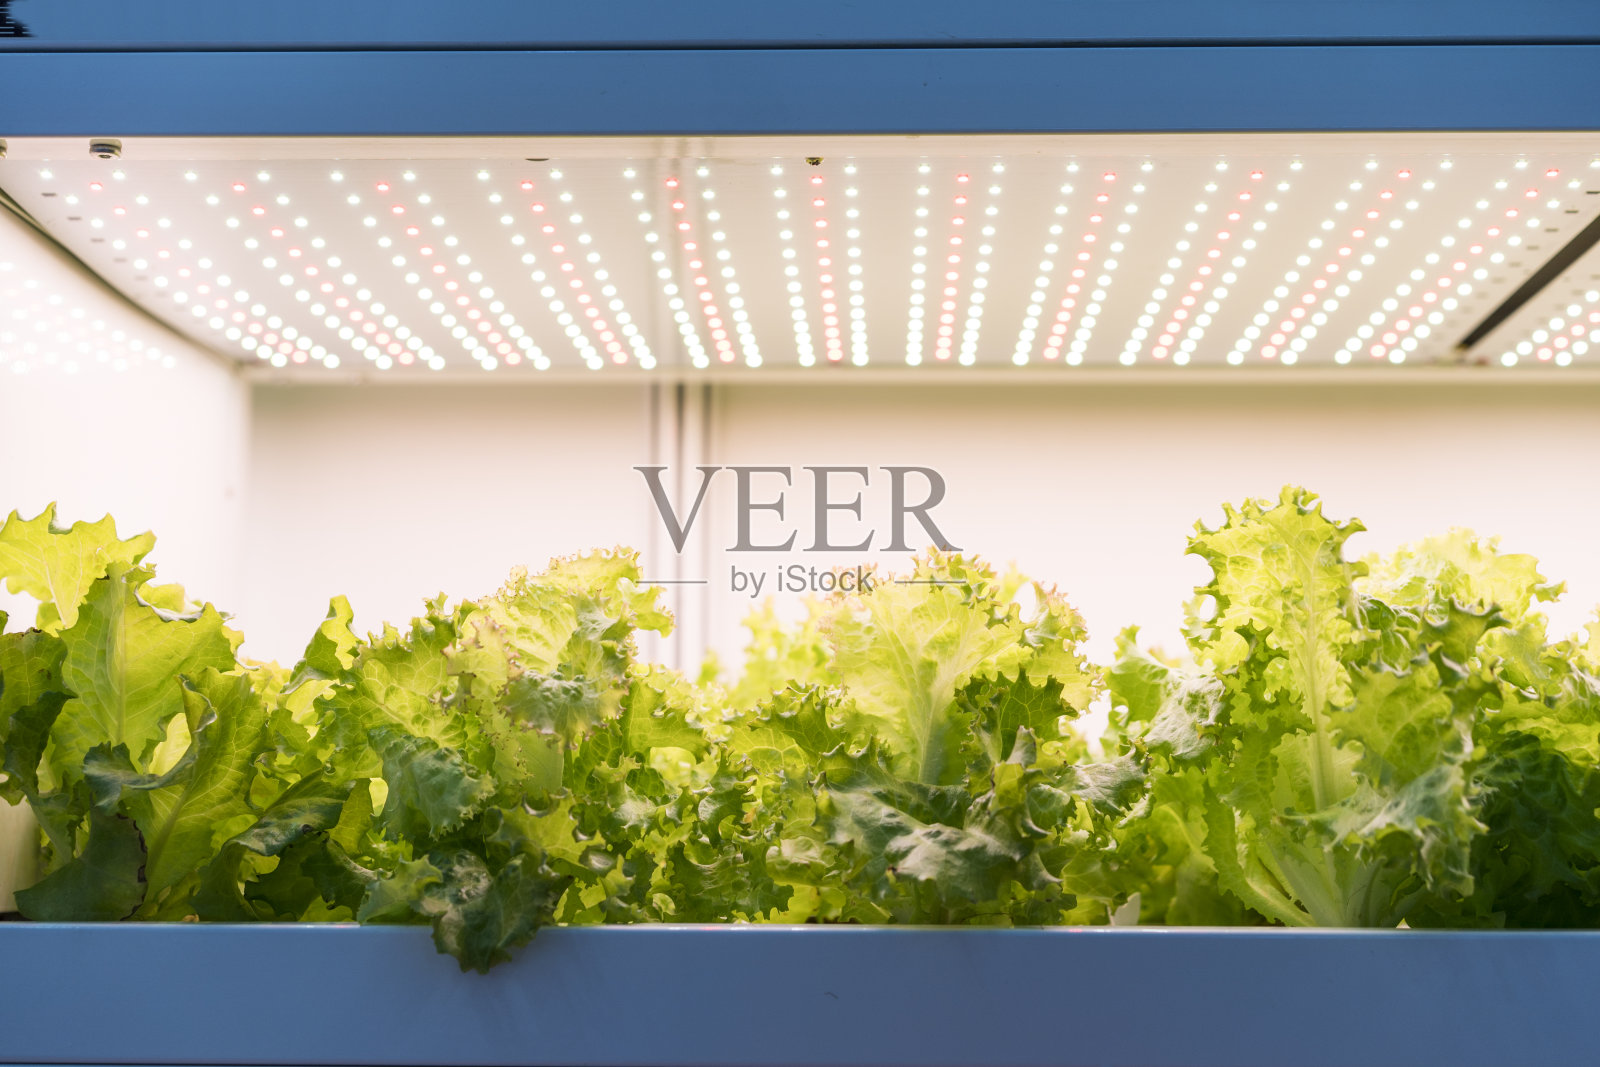 Led照明室内农场技术的温室蔬菜种植照片摄影图片